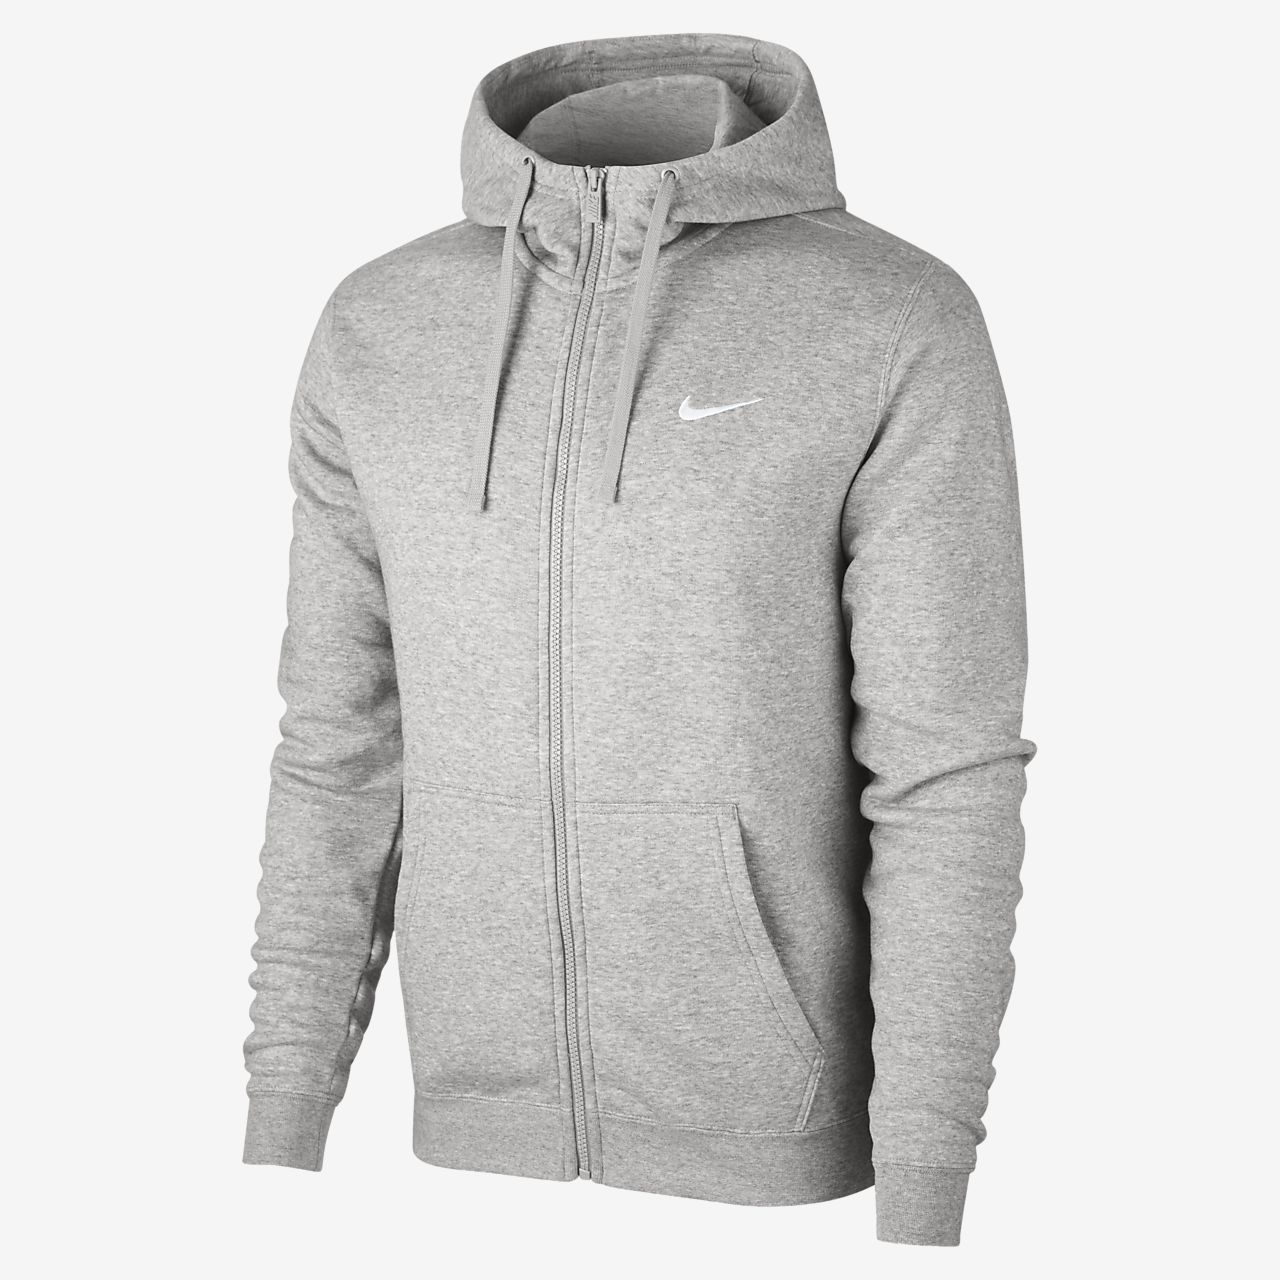 nike grey hoodie zip